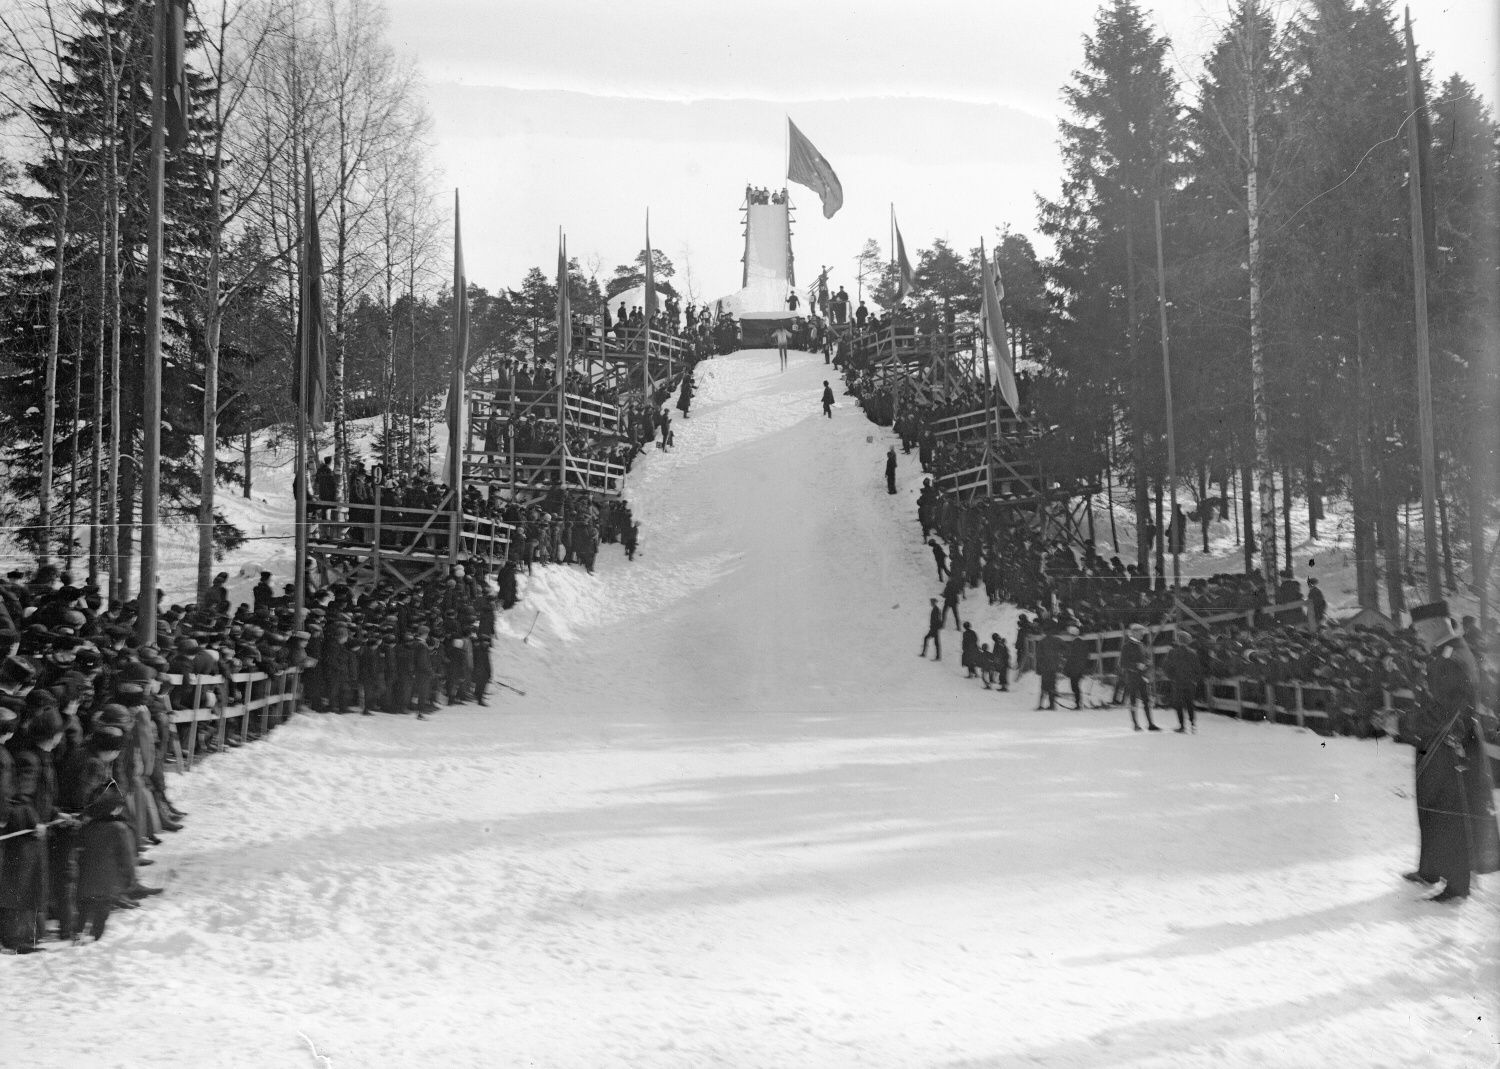 Skoky na lyžích - historie